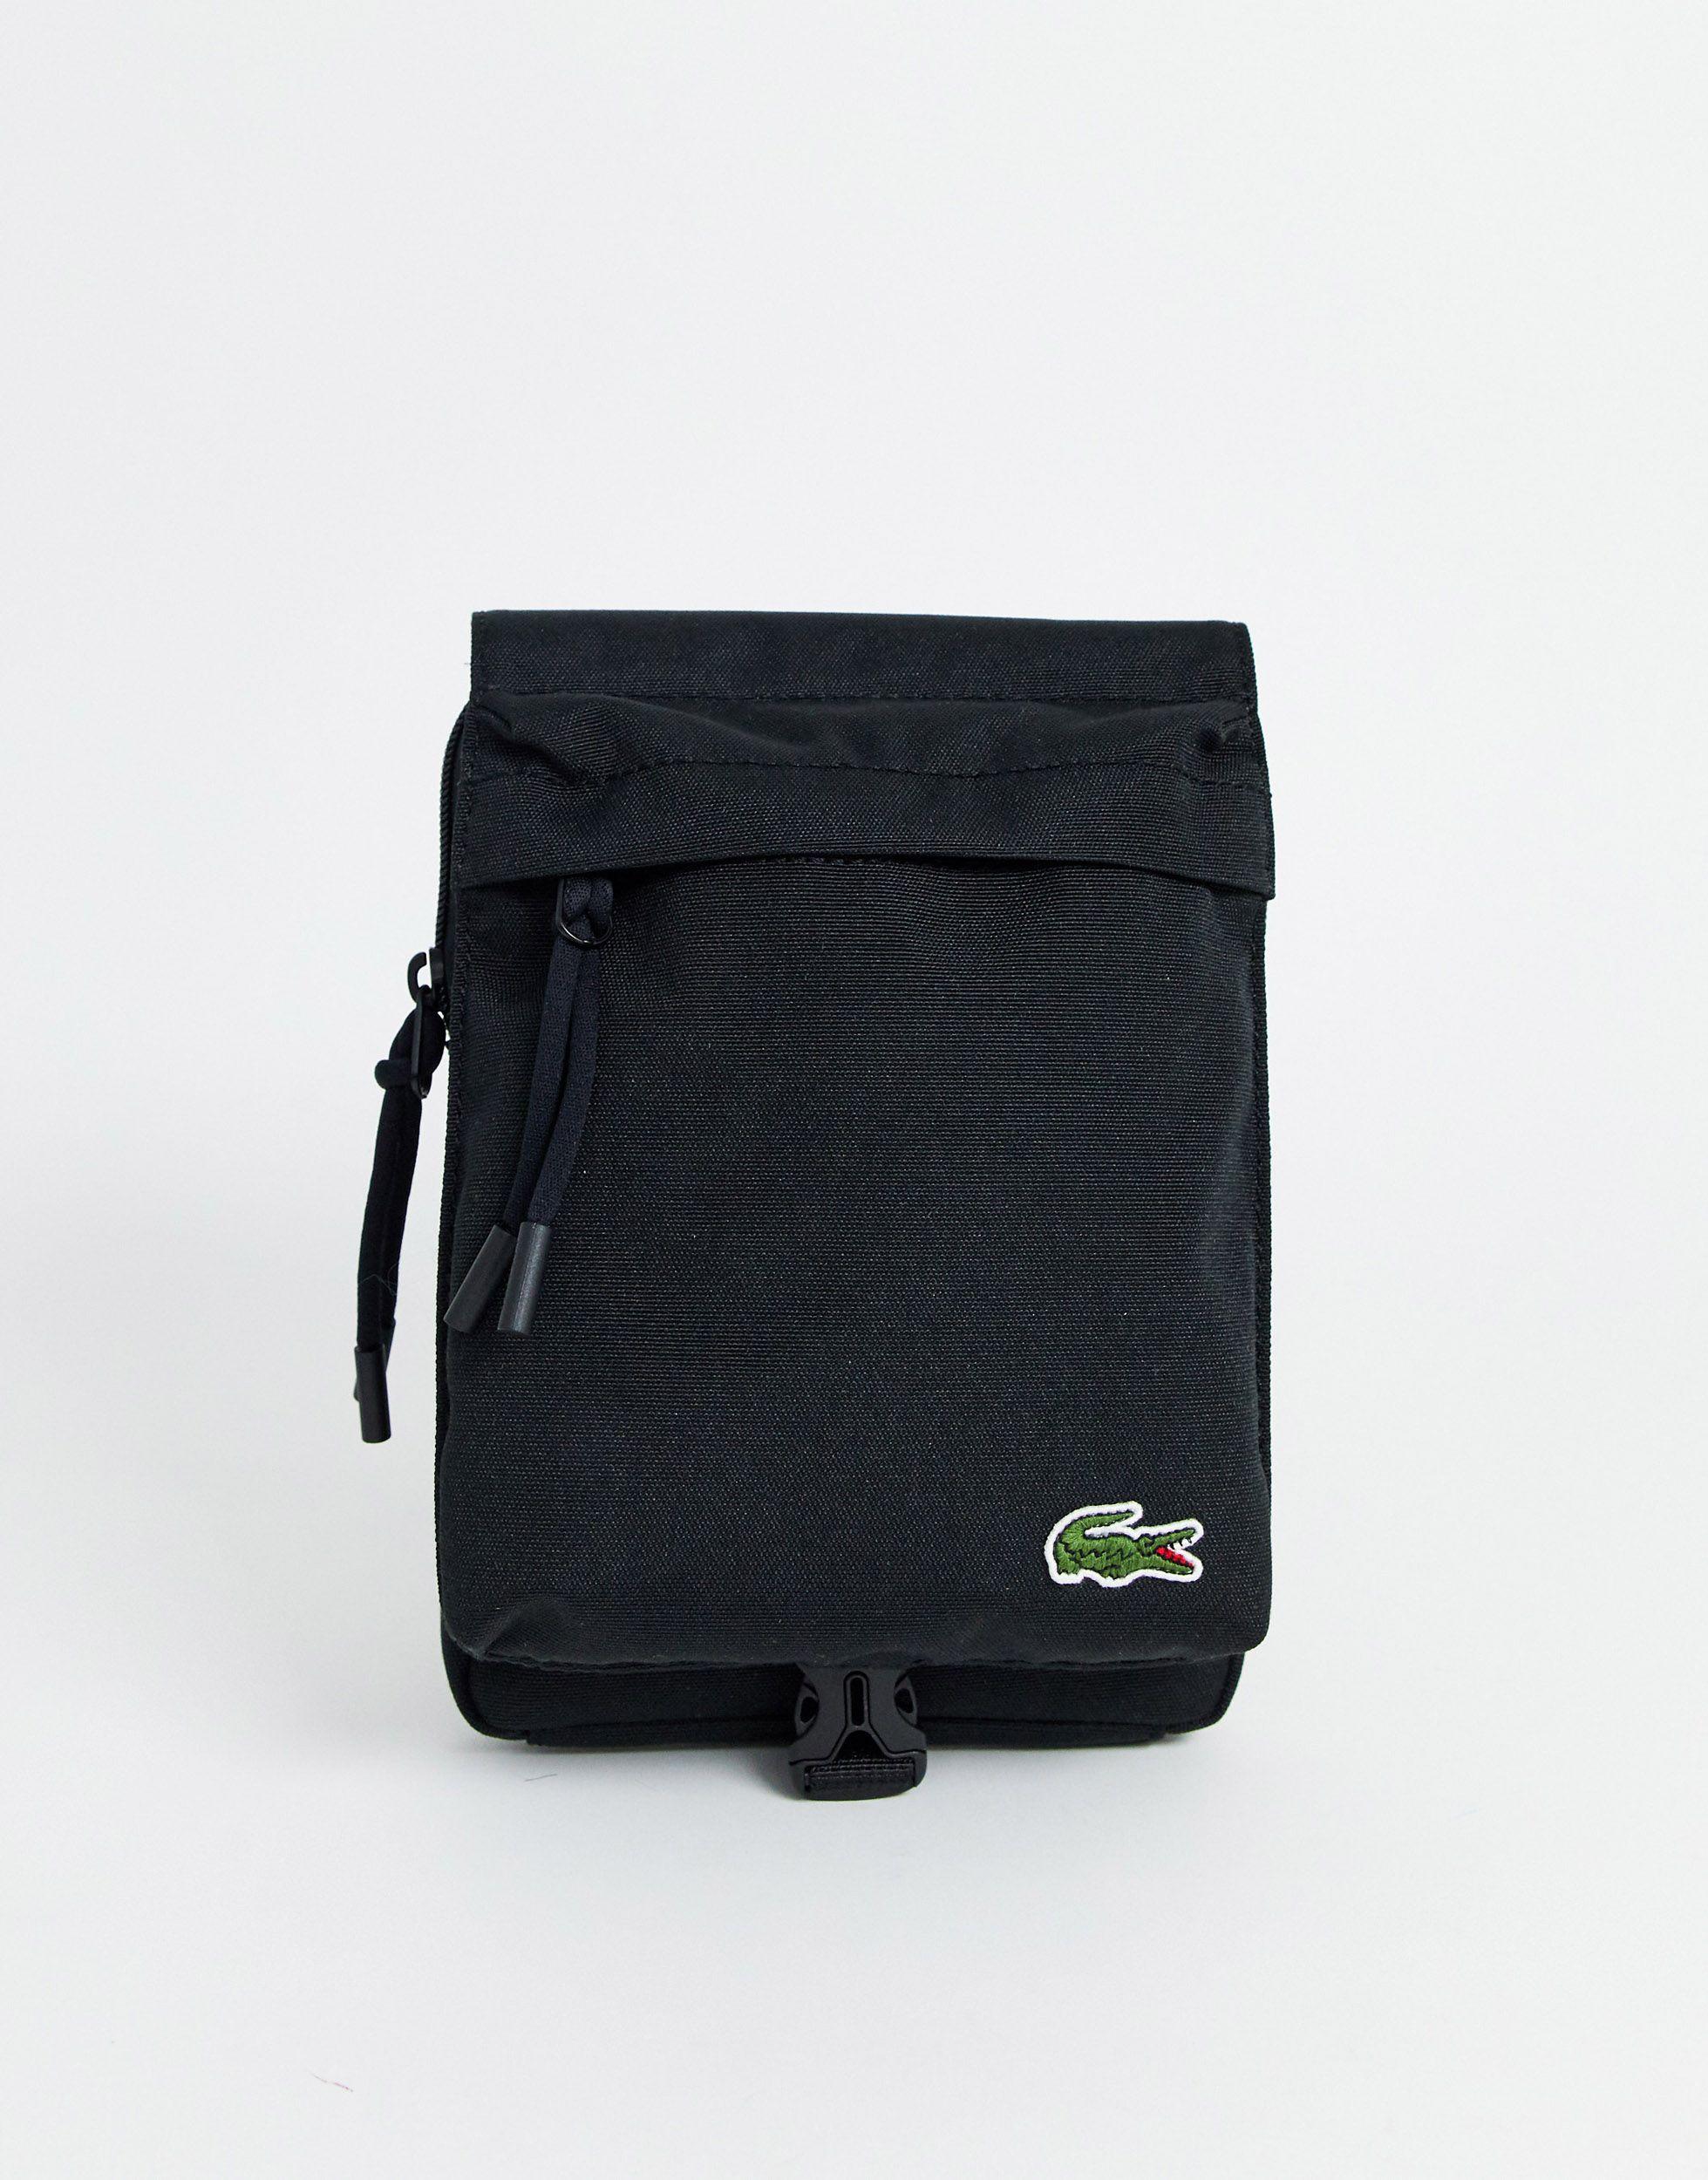 Lacoste Synthetic Croc Logo Cross Body Flight Bag in Black for Men - Lyst